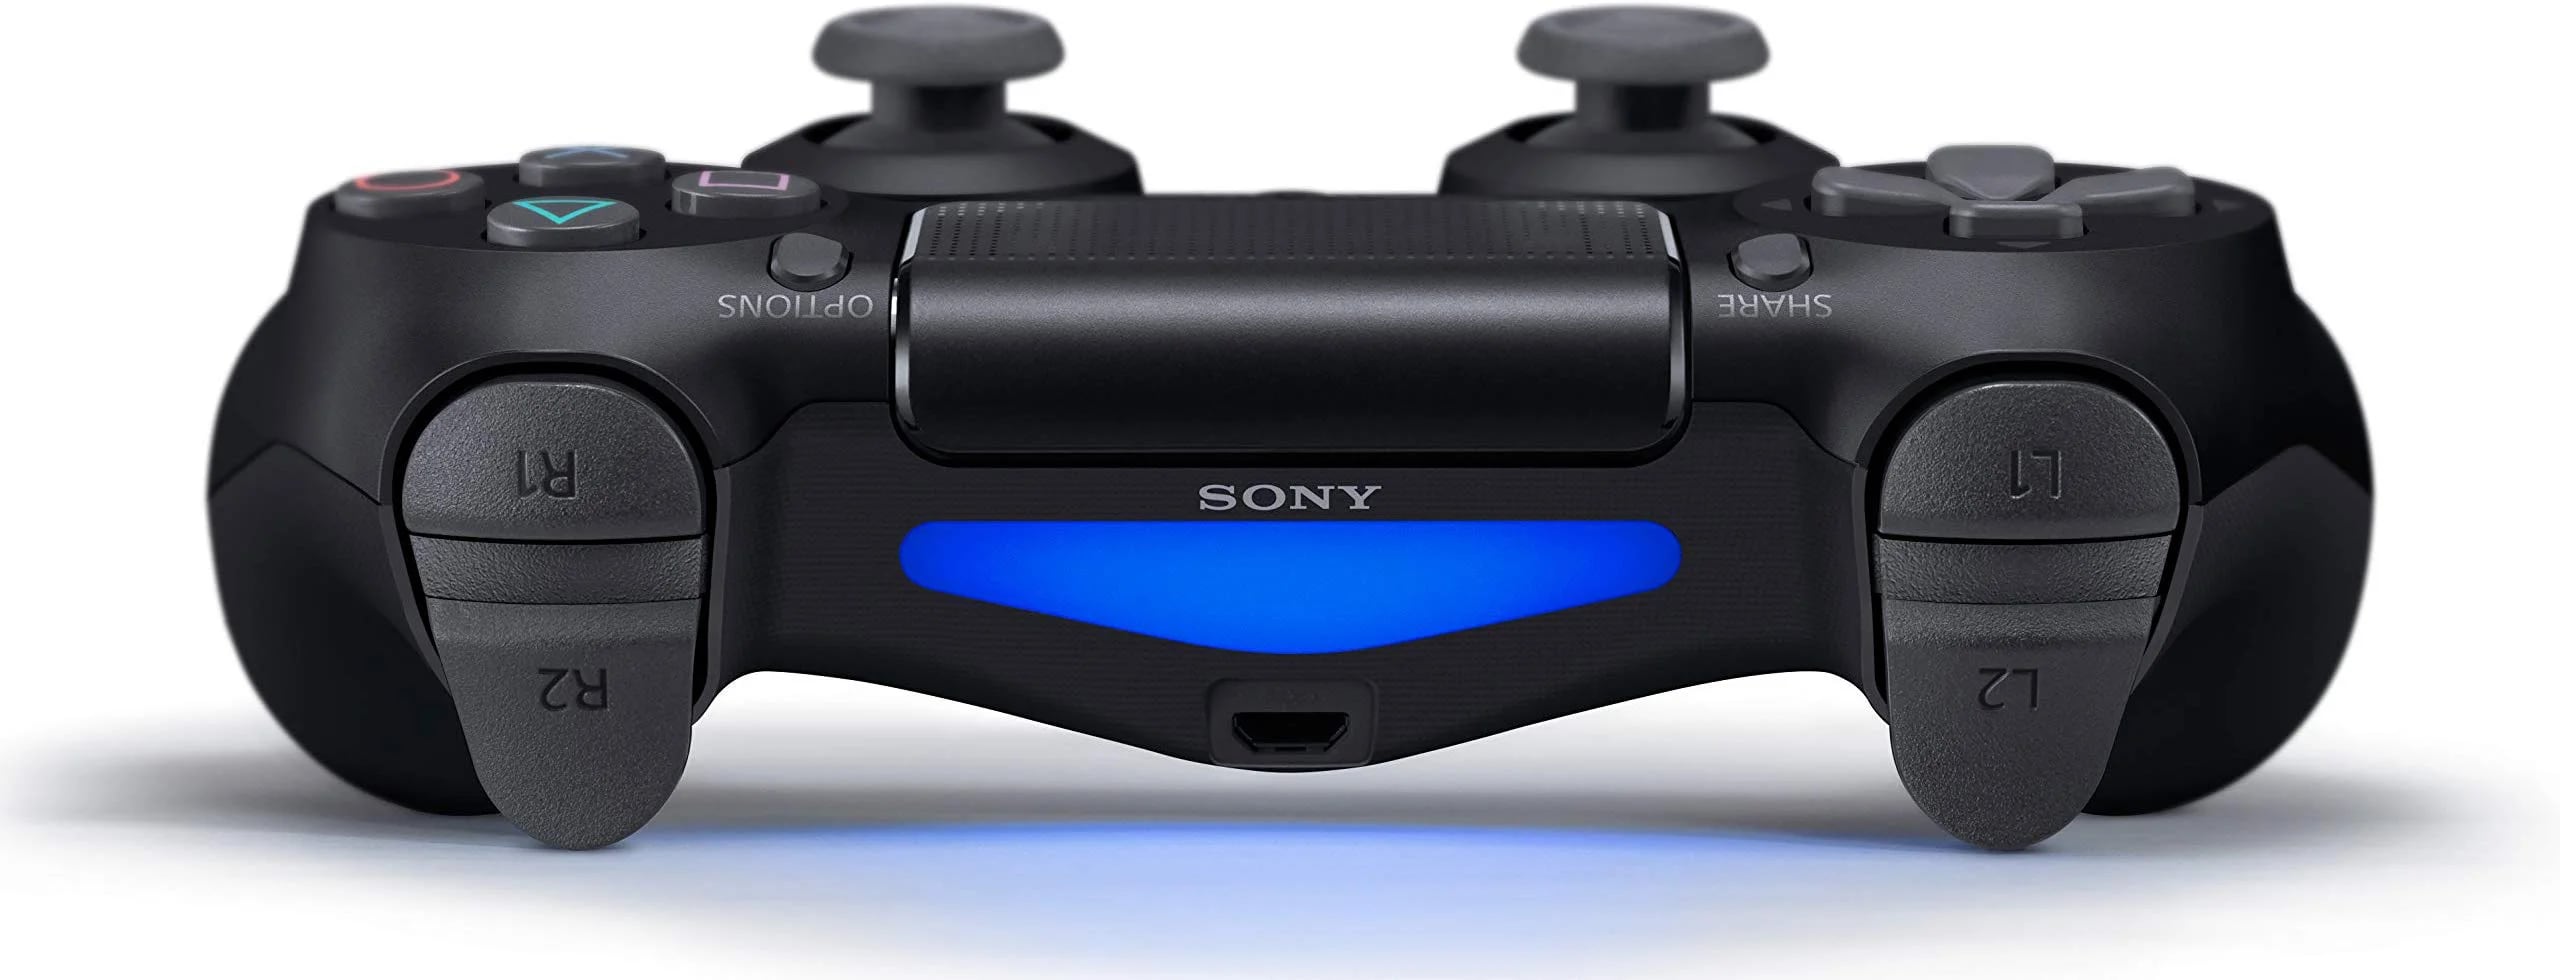 Llegaron dos nuevas versiones de la PlayStation 4 - Infobae